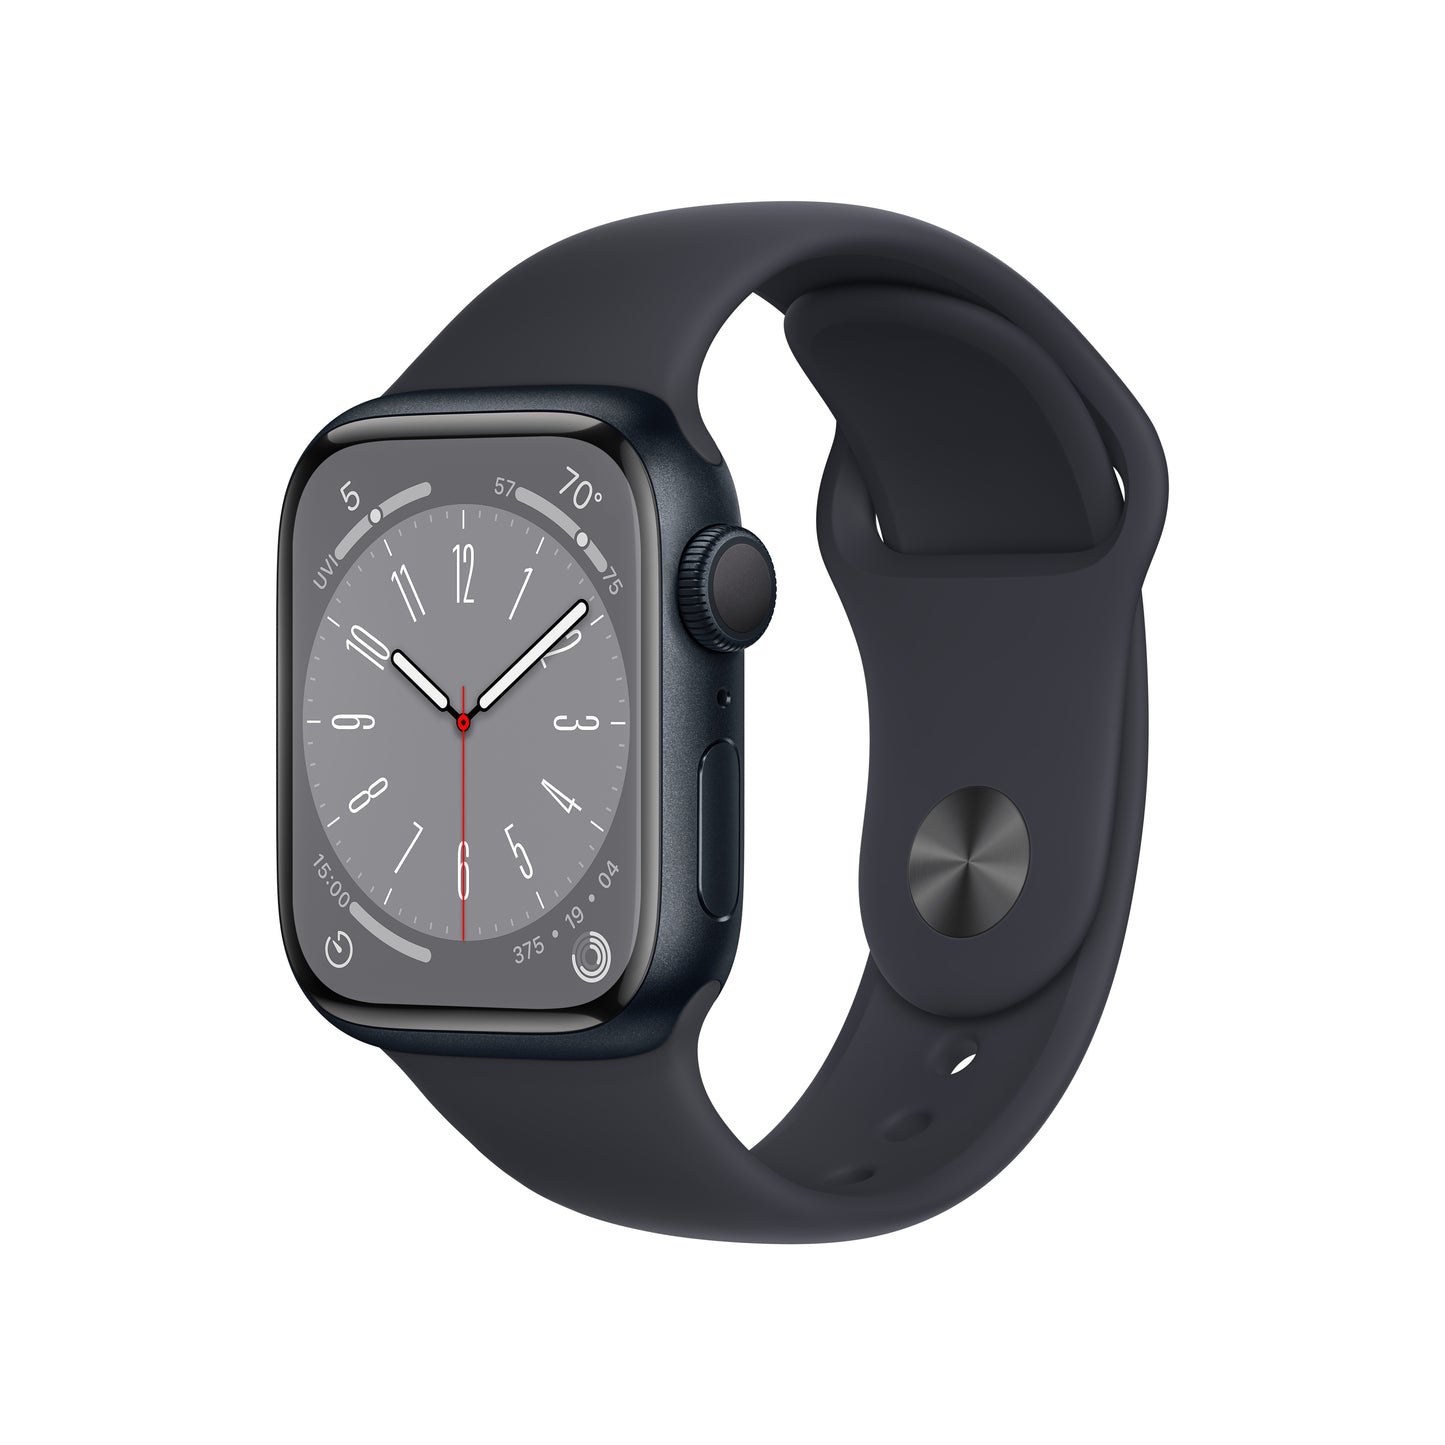 Qué tamaño de Apple Watch comprar